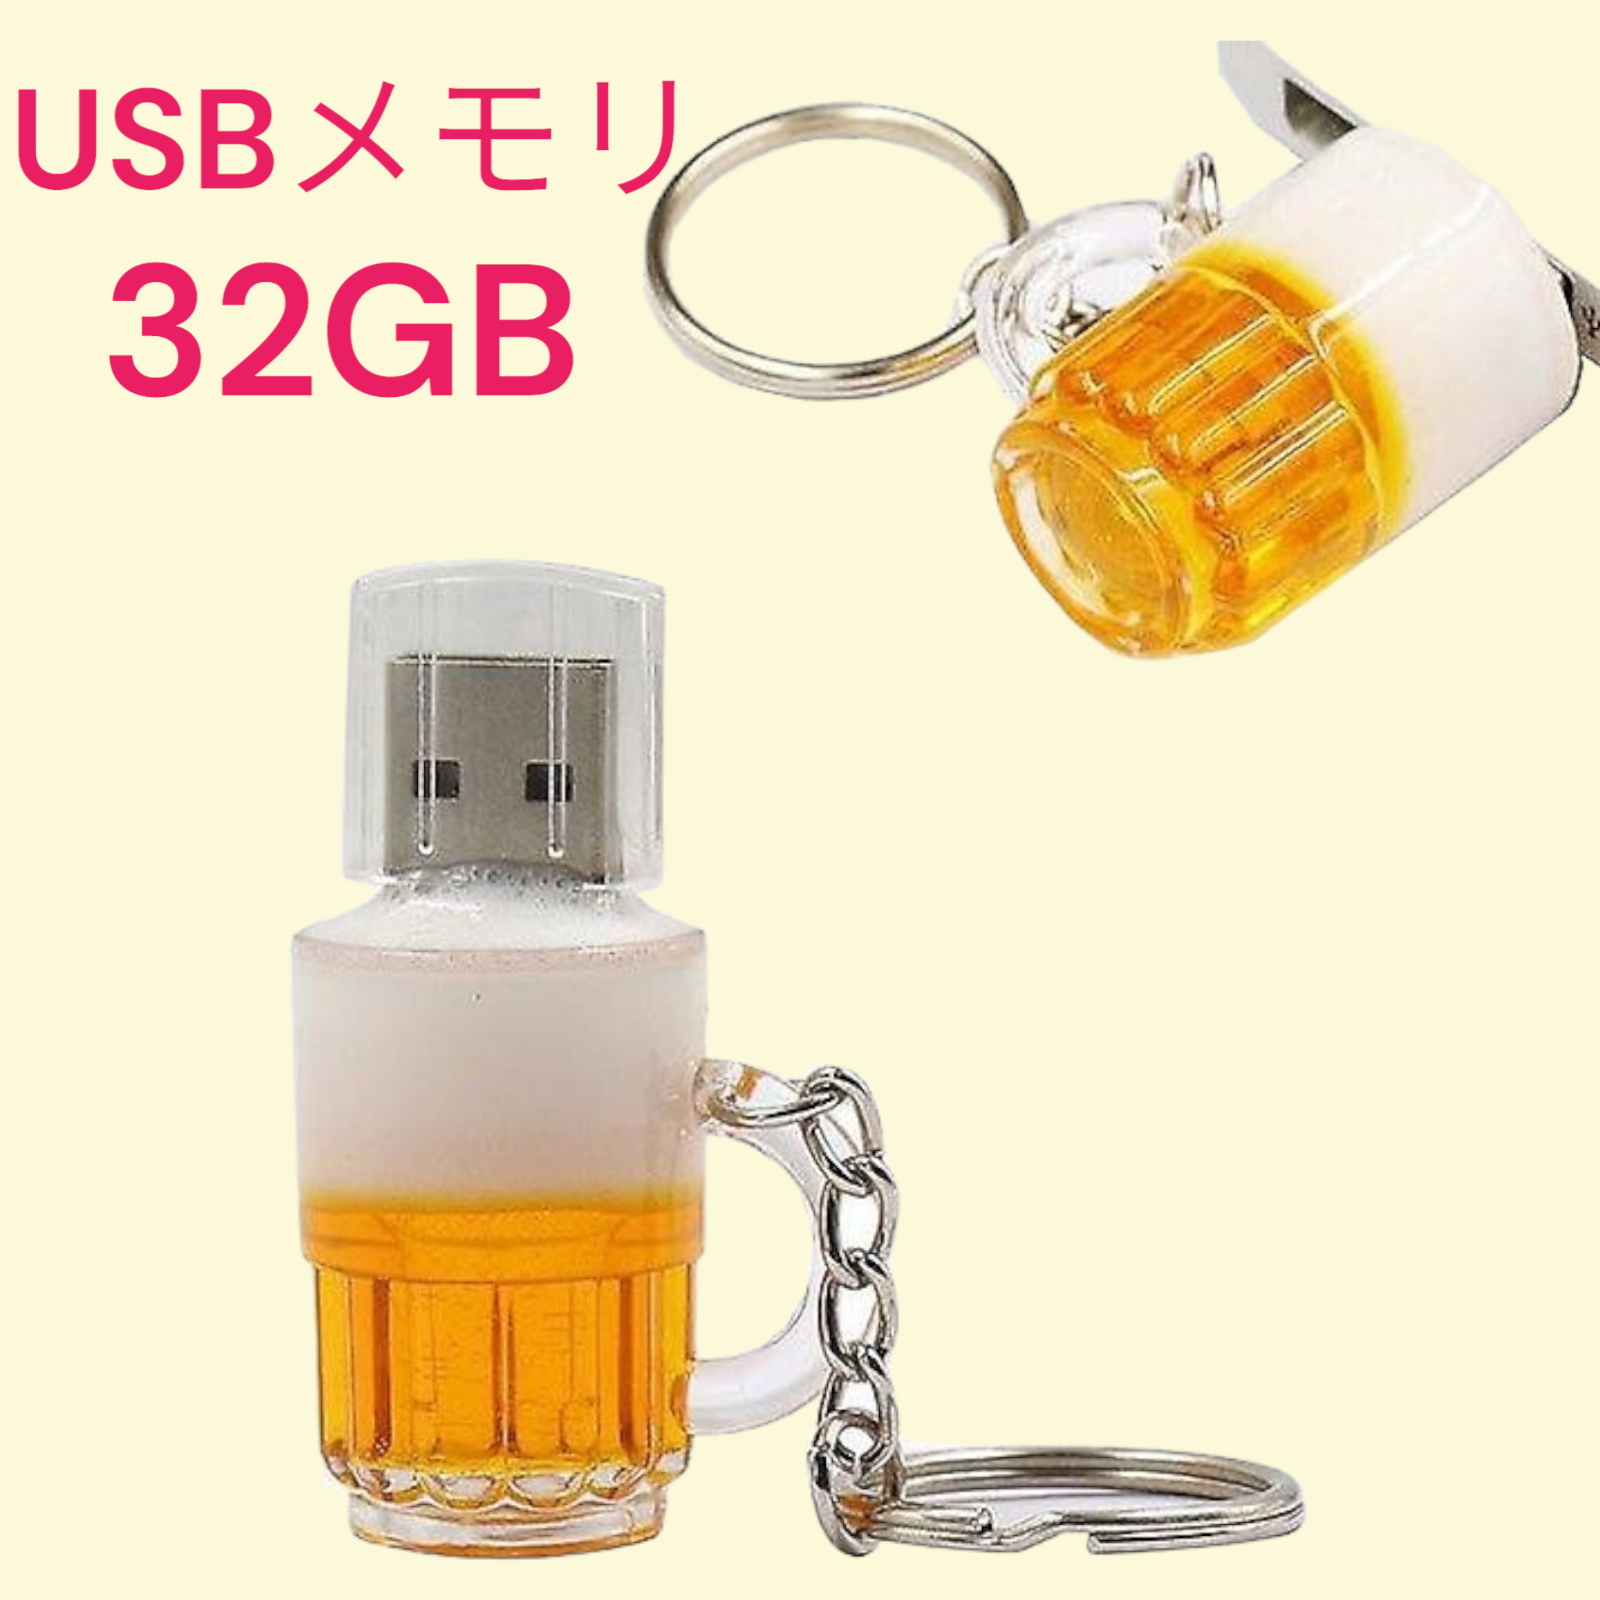 おもしろUSB ビールUSB 16GB USBメモリ キーホルダー